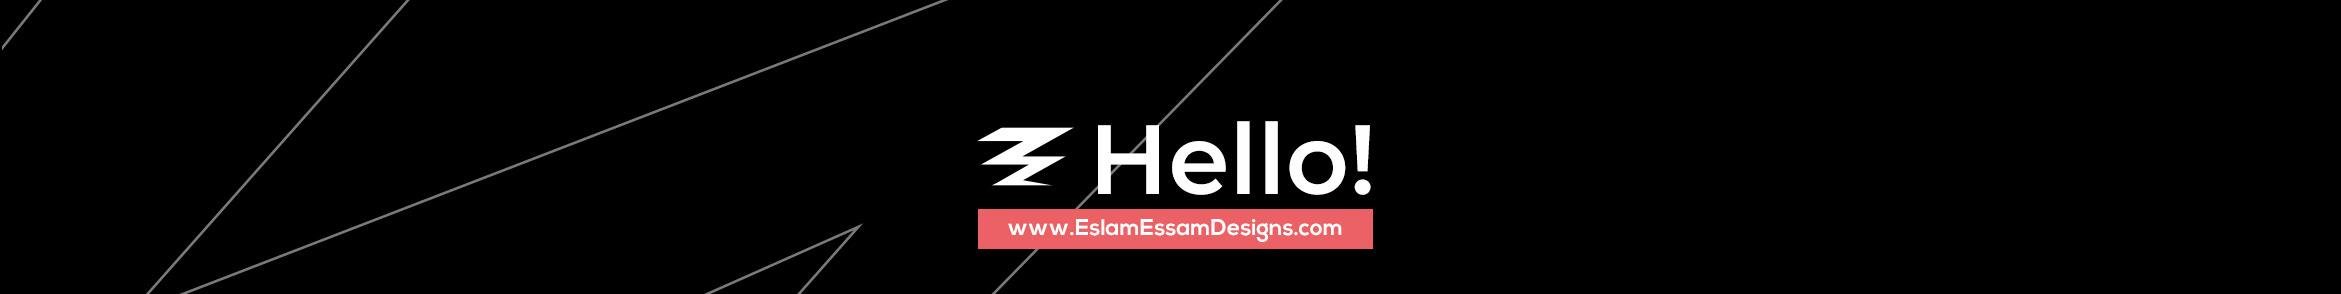 Eslam Essam's profile banner